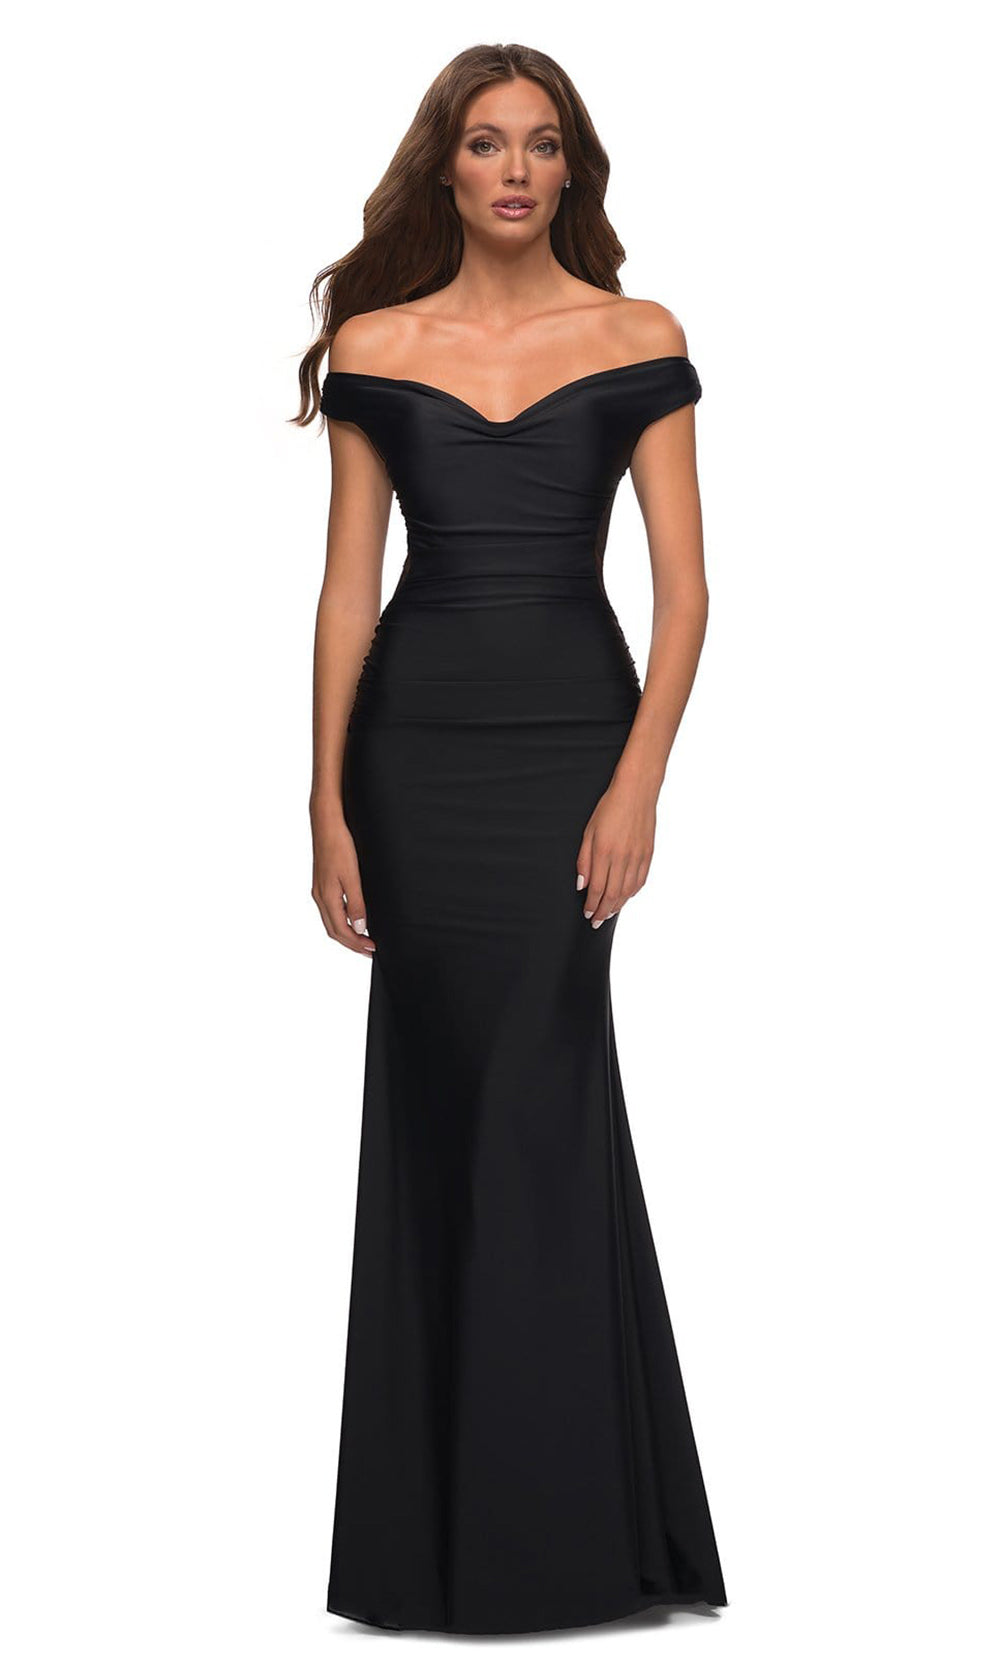 La Femme - 30449 Illusion Back Ruched Dress In Black